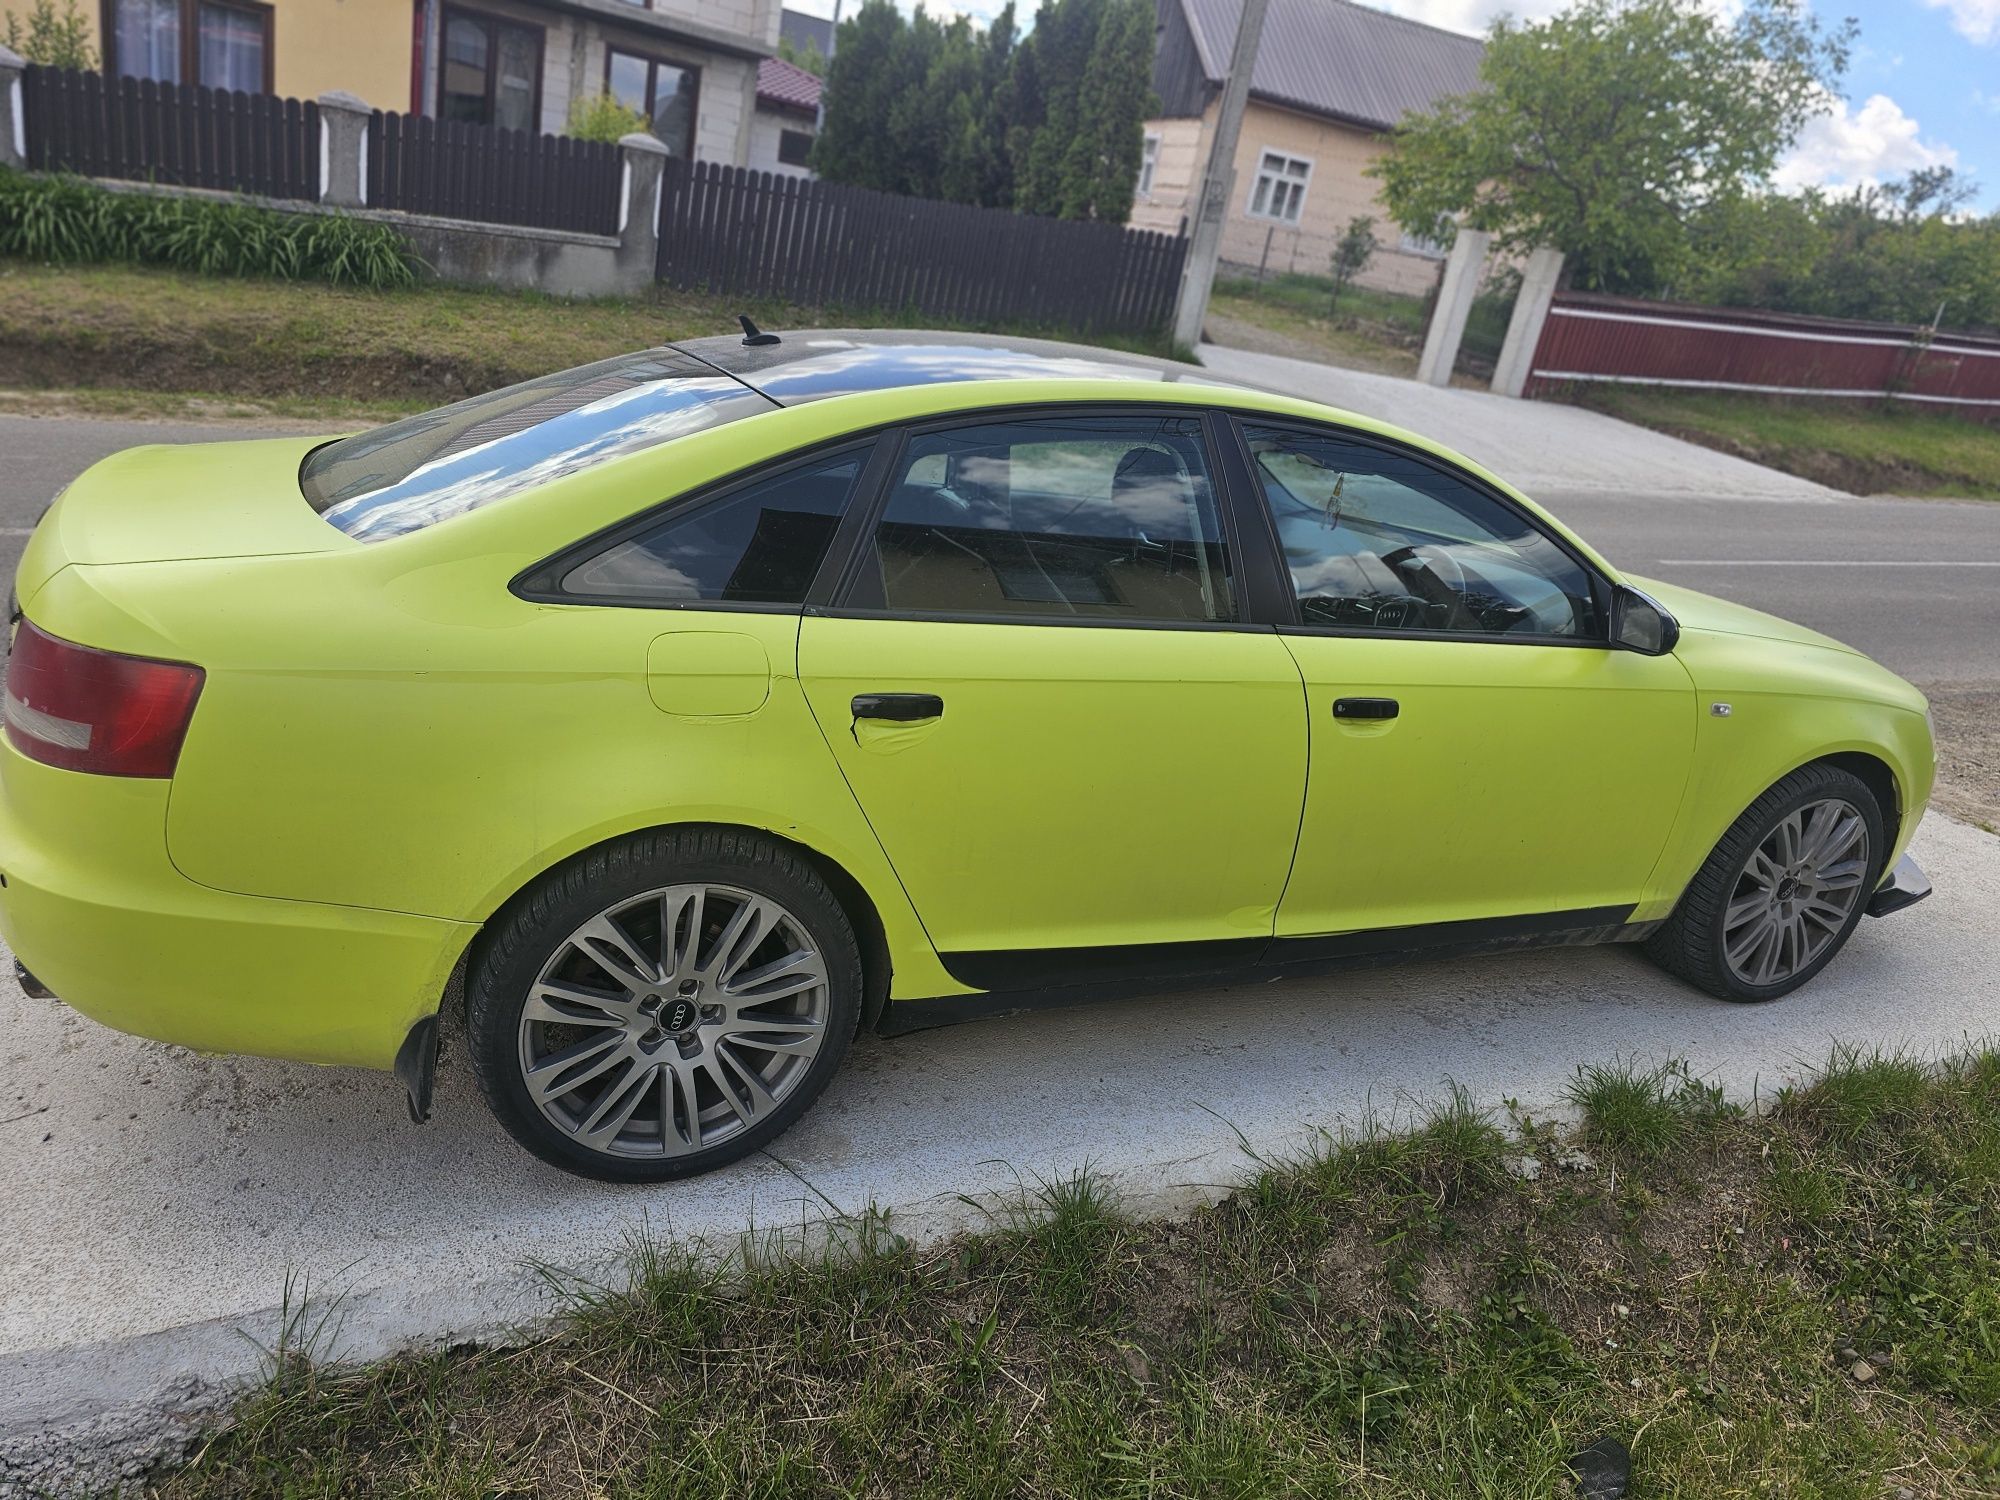 Audi A6 2.0 Diesel